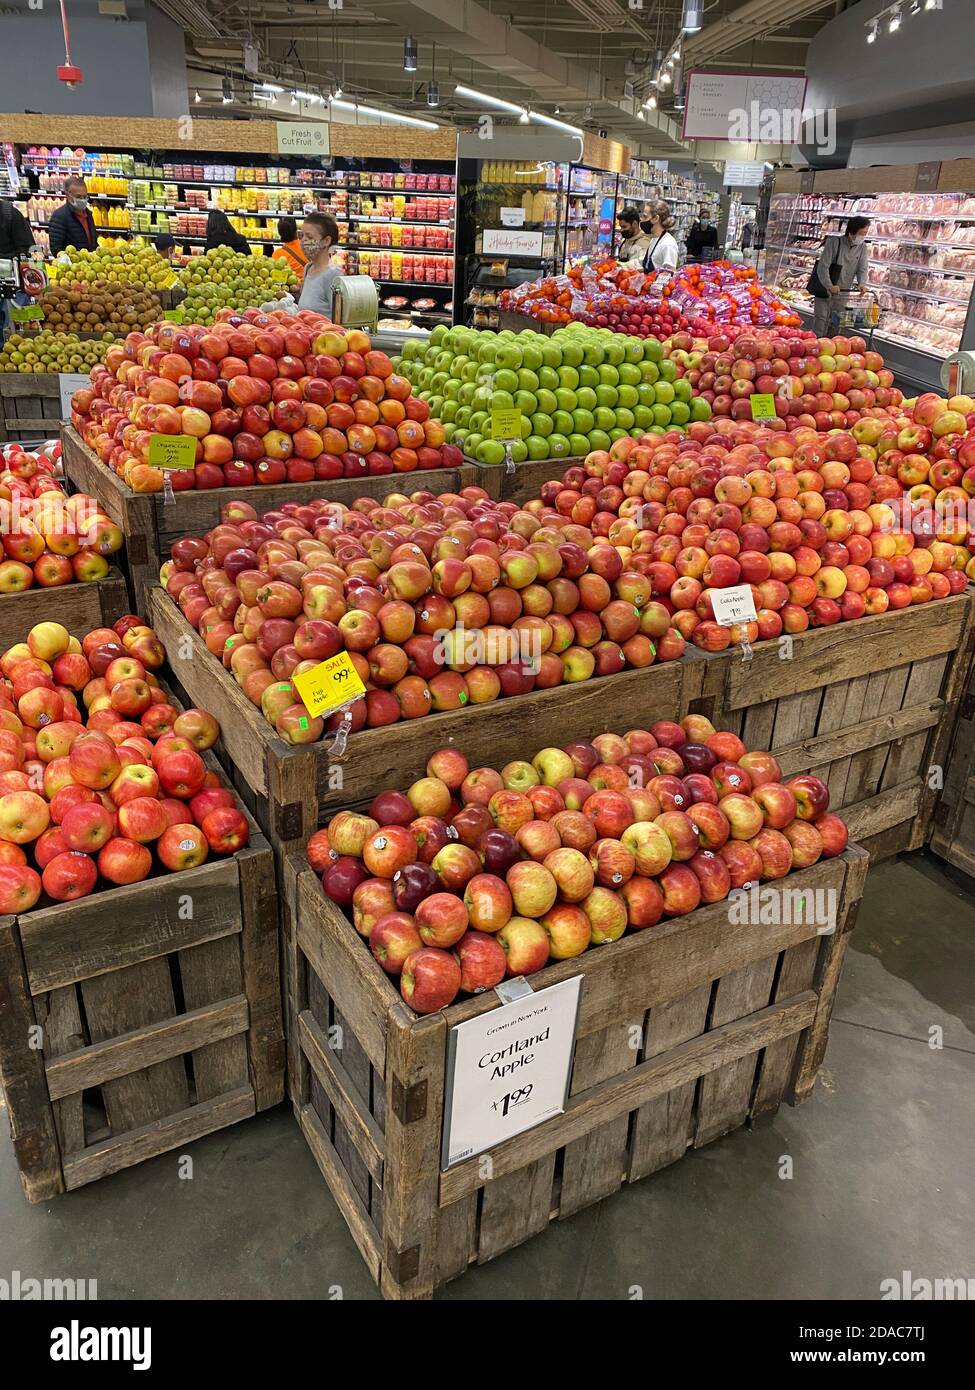 Cortland Apples - Groceries By Israel